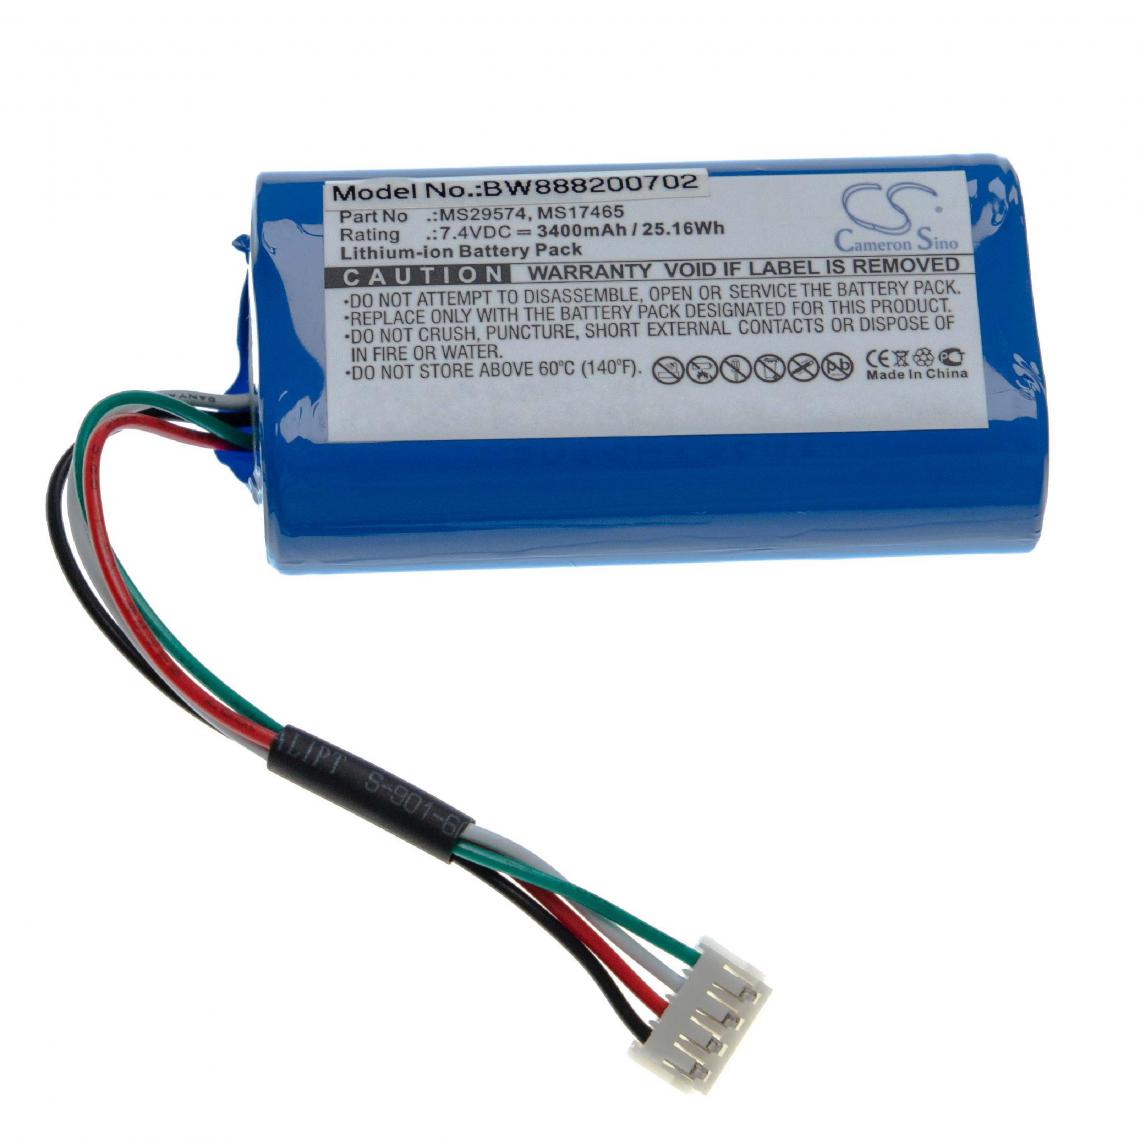 Vhbw - vhbw batterie compatible avec Dräger Infinity M450, M540 appareil de médecine comme moniteur de surveillance de patient (3400mAh, 7.4V, Li-Ion) - Piles spécifiques